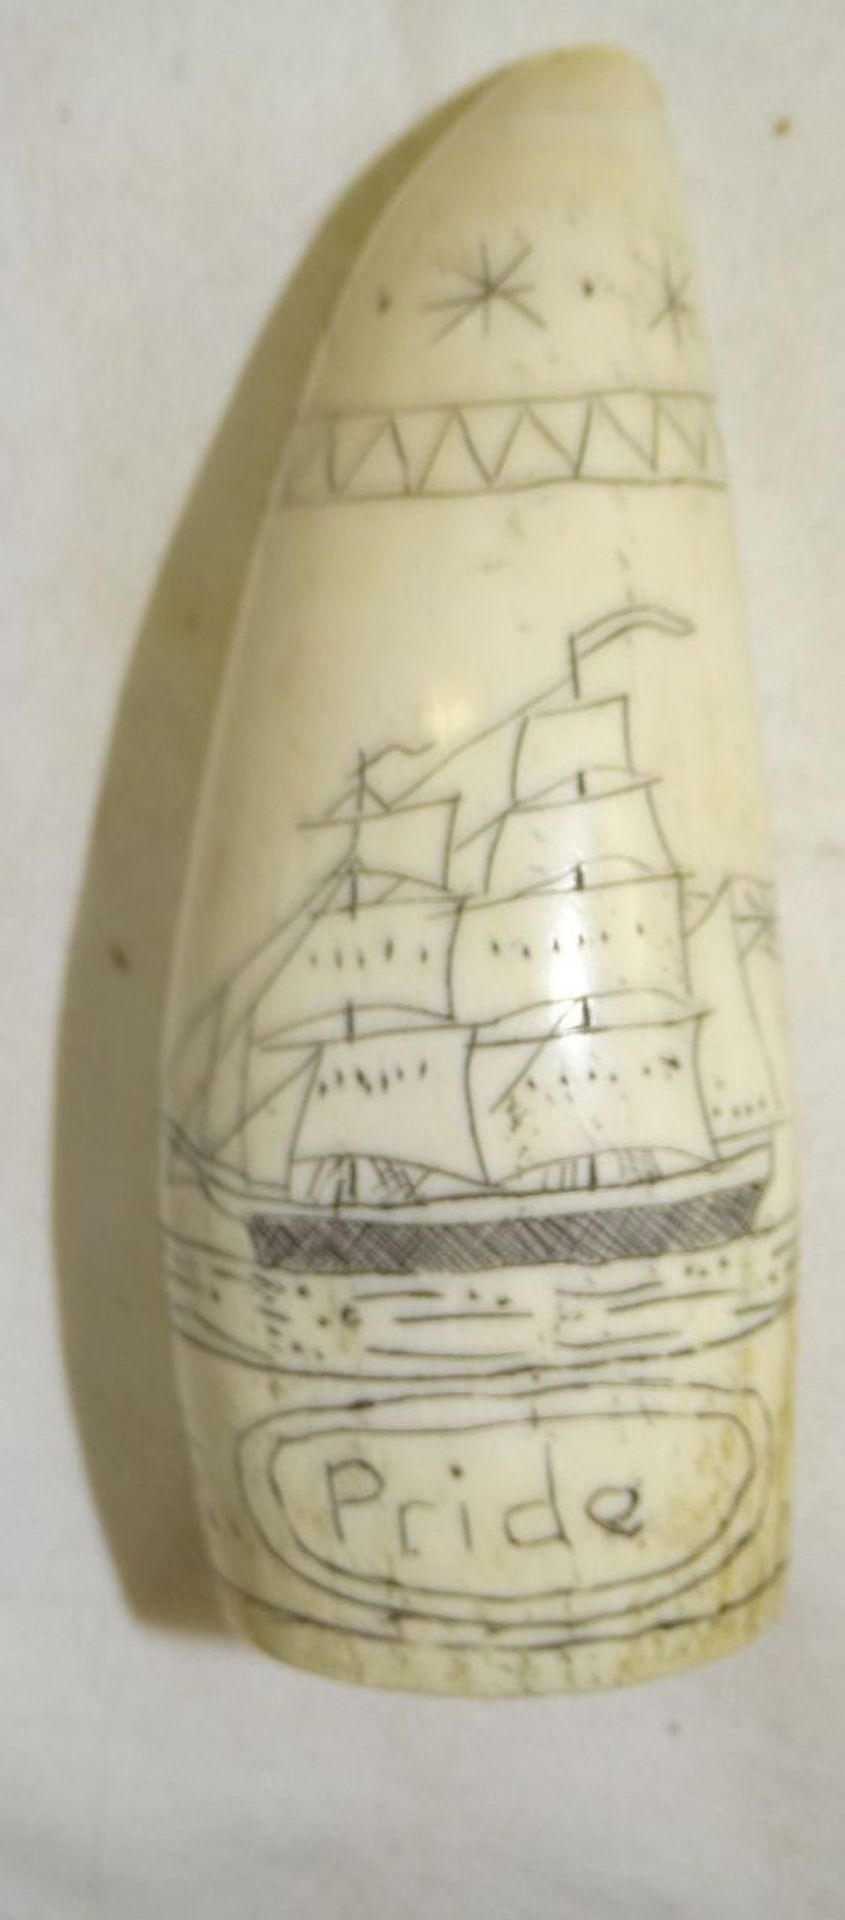 Kleiner alter Pottwalzahn miIt beidseitiger Gravur ,,Segelschiff''' und Text ,,Pride of London'', - Bild 2 aus 3